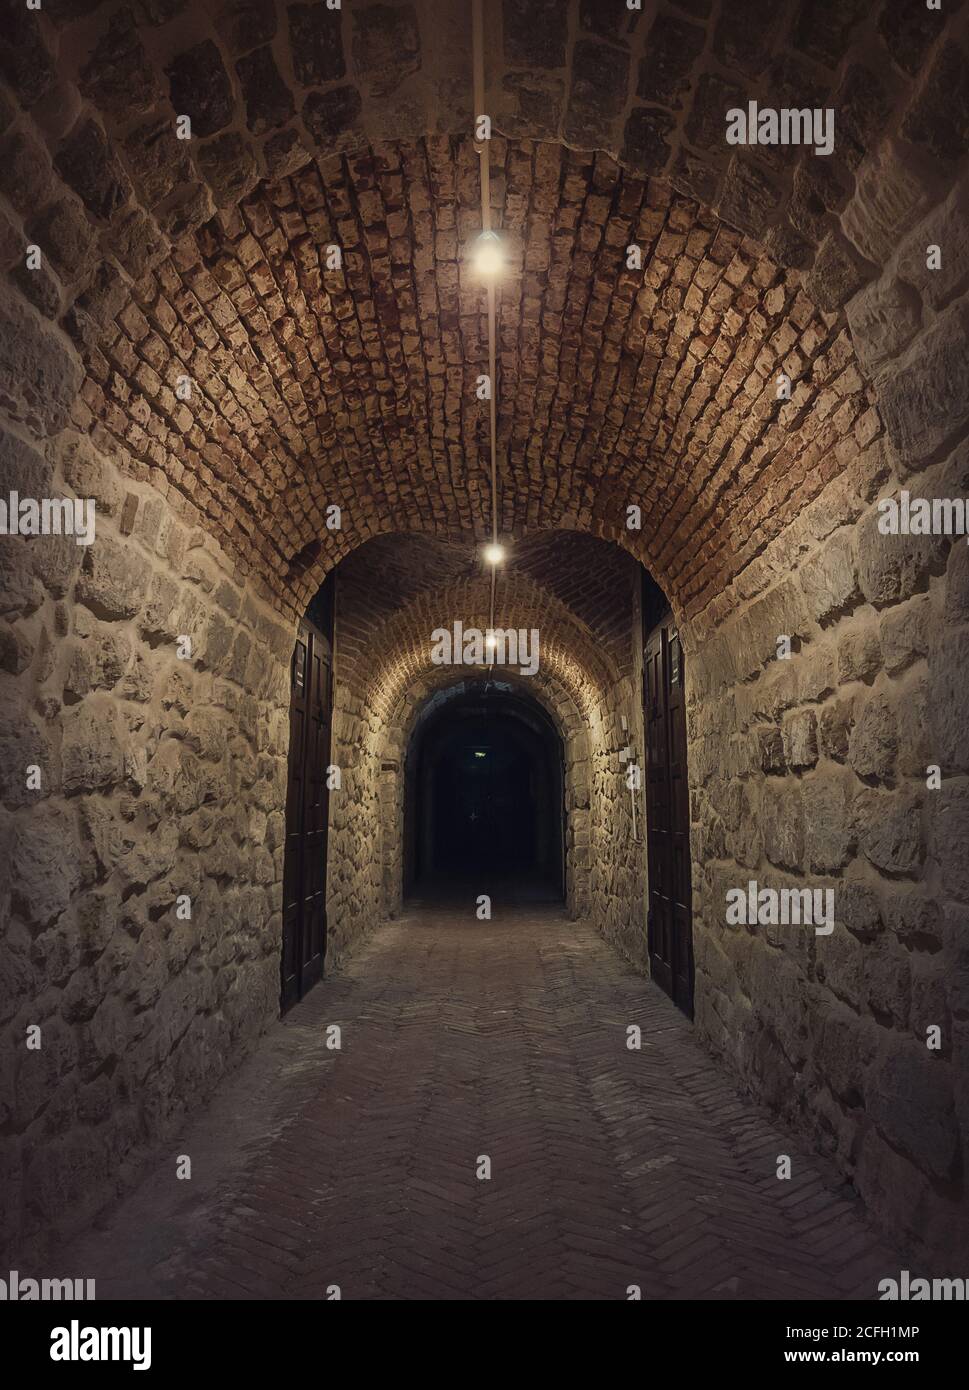 Ancien tunnel de cave à vin dans le domaine viticole Hincesti, sous-sol de la maison de Manuc BEI en Moldavie. Traditionnel moldavian rural subterrane pierre voûte reco Banque D'Images